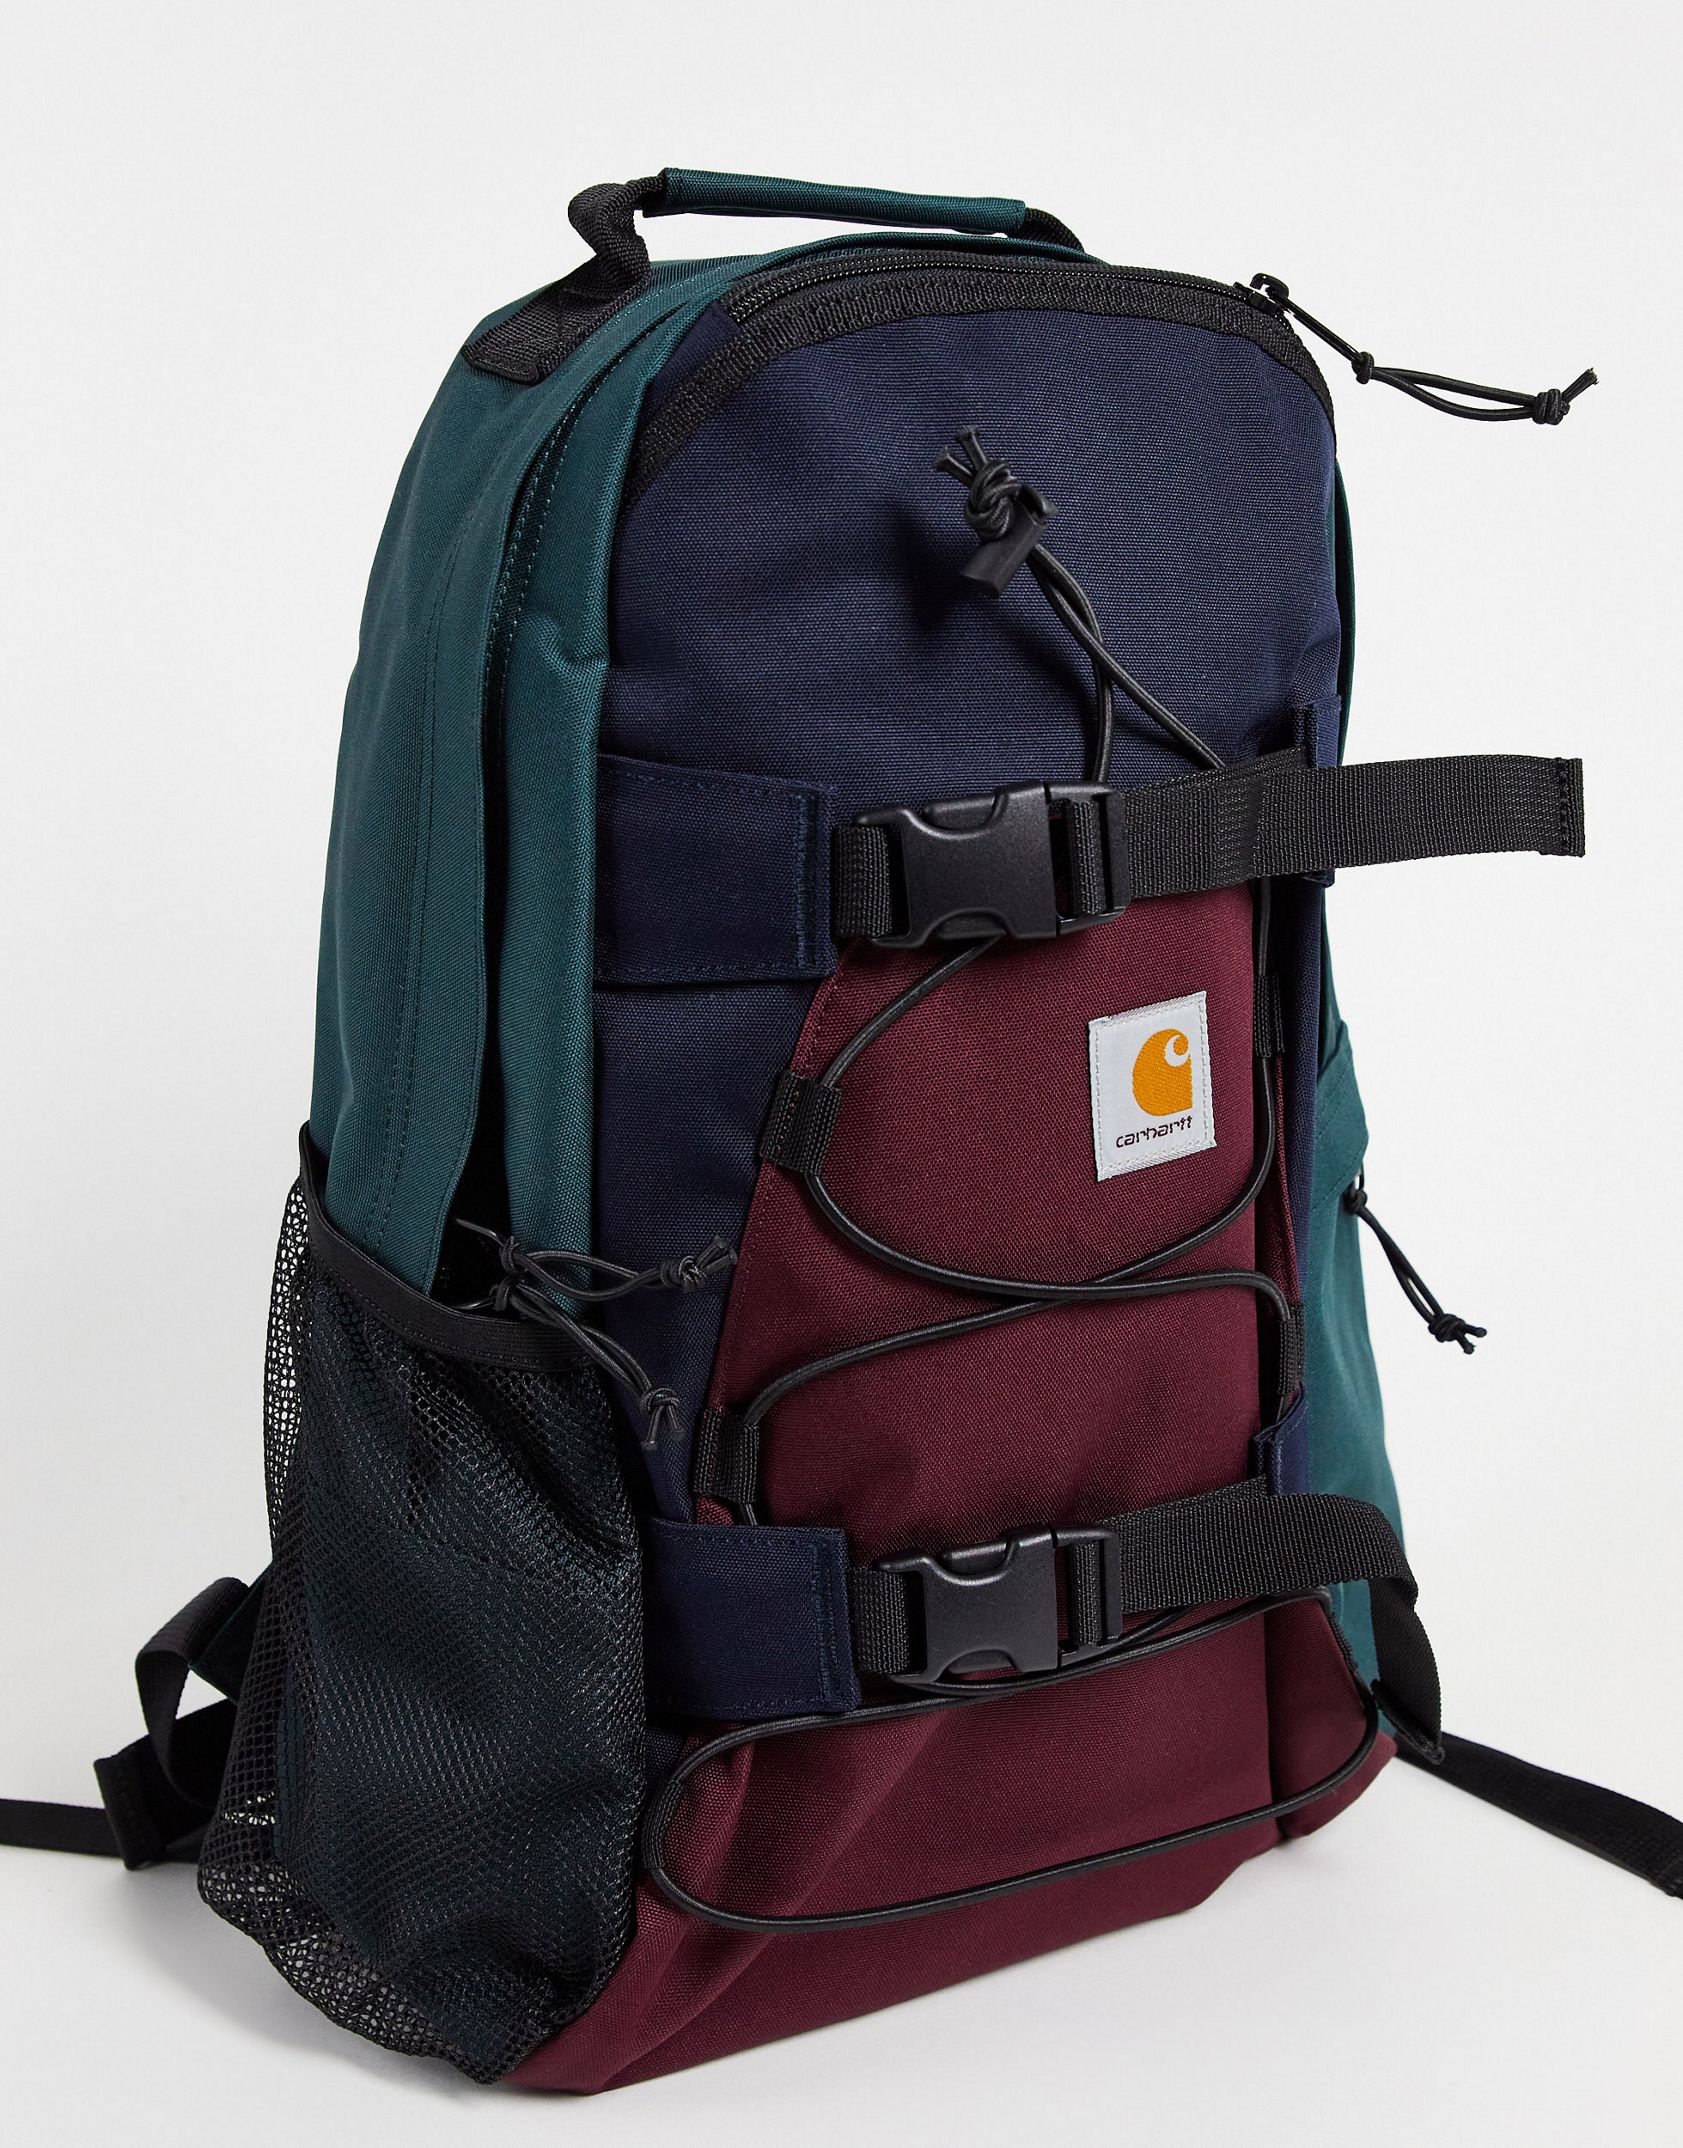 Carhartt WIP kickflip backpack in multi